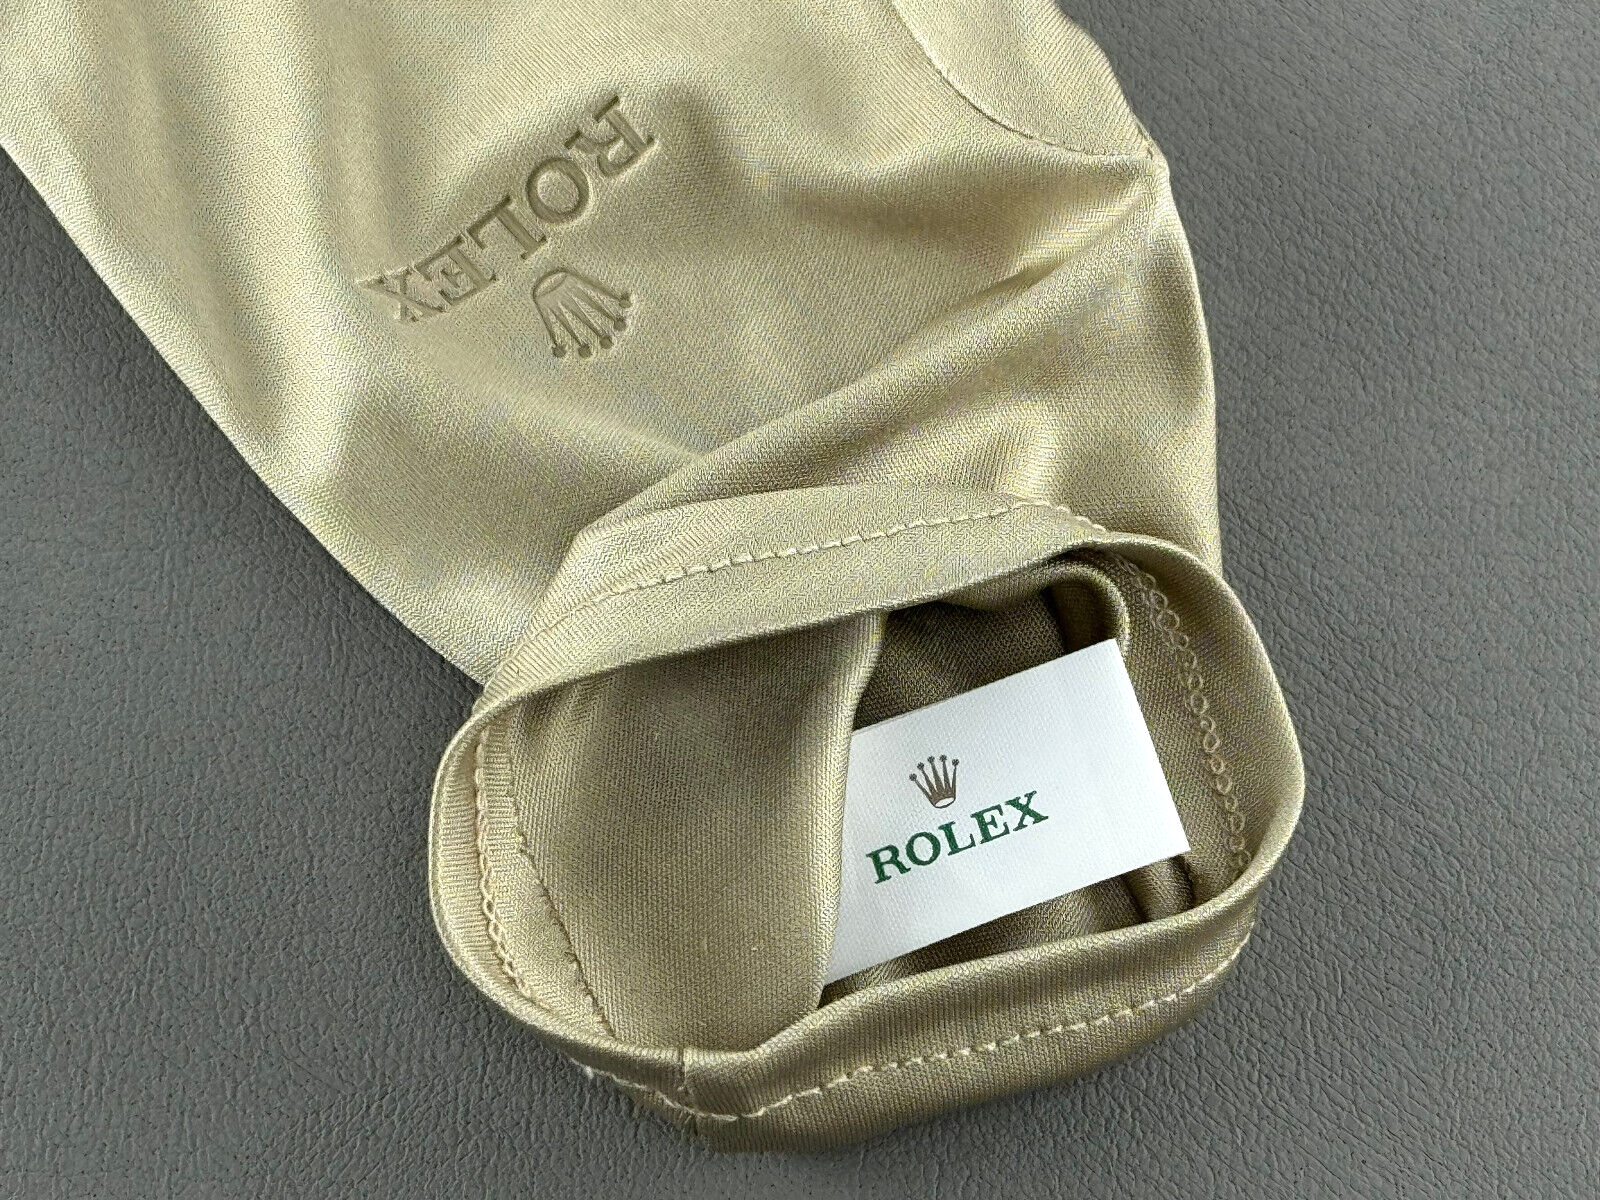 Rolex Polyester Konzessionär Juwelier Handschuhe gloves Beige